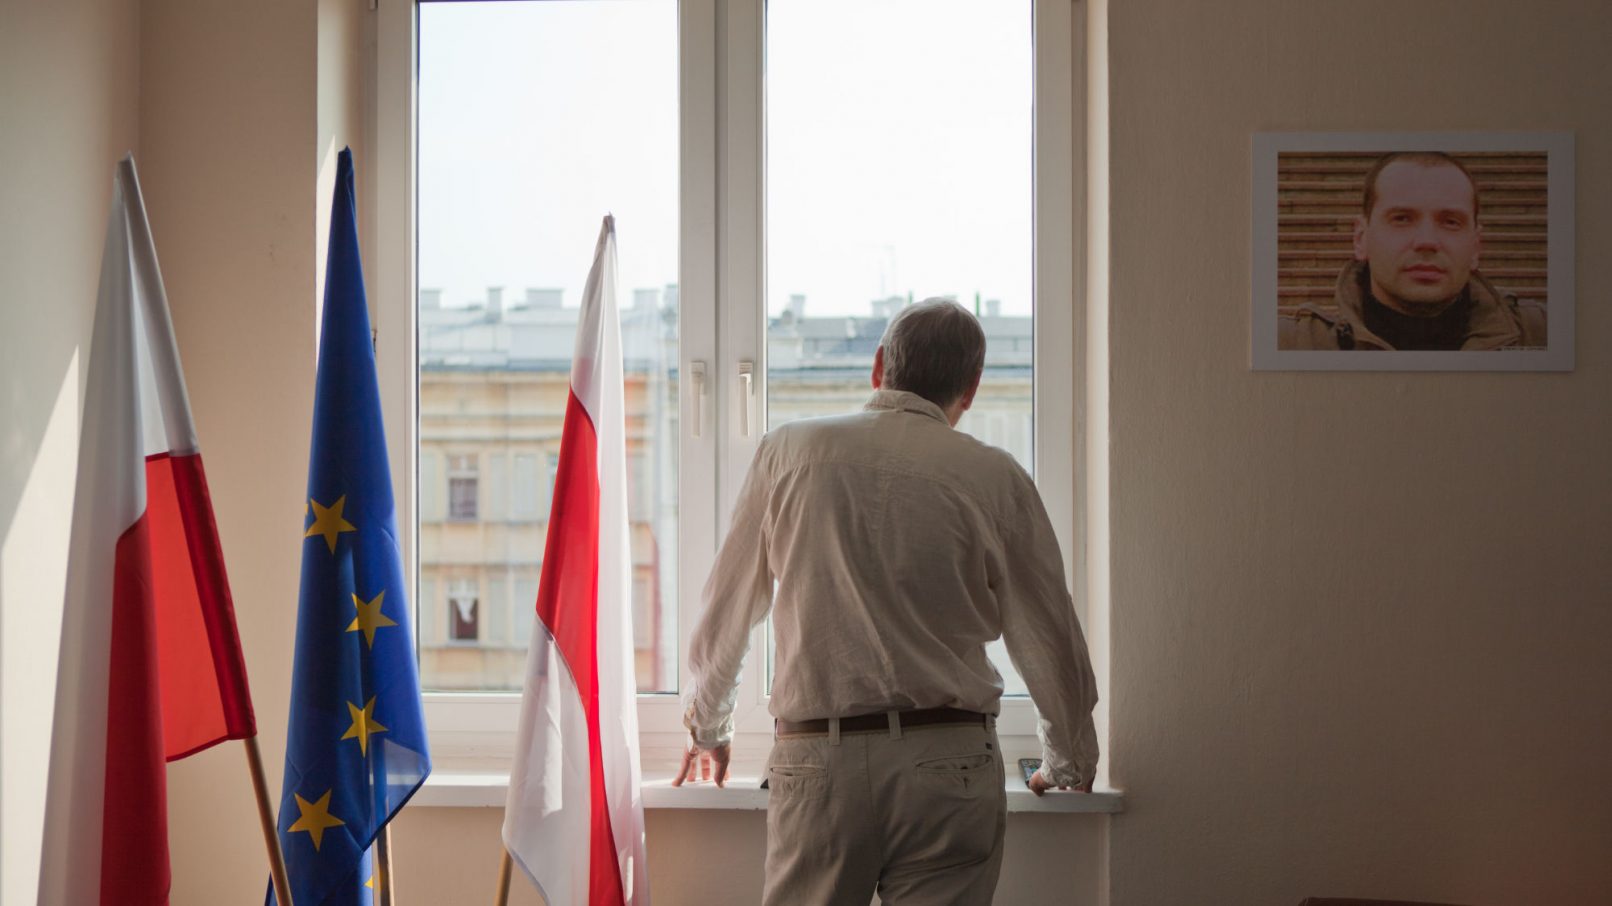 Mann steht am Fenster und sieht nach draußen.Neben ihm drei Fahnen, die der Europäischen Union und weiß-rot von Belarus.